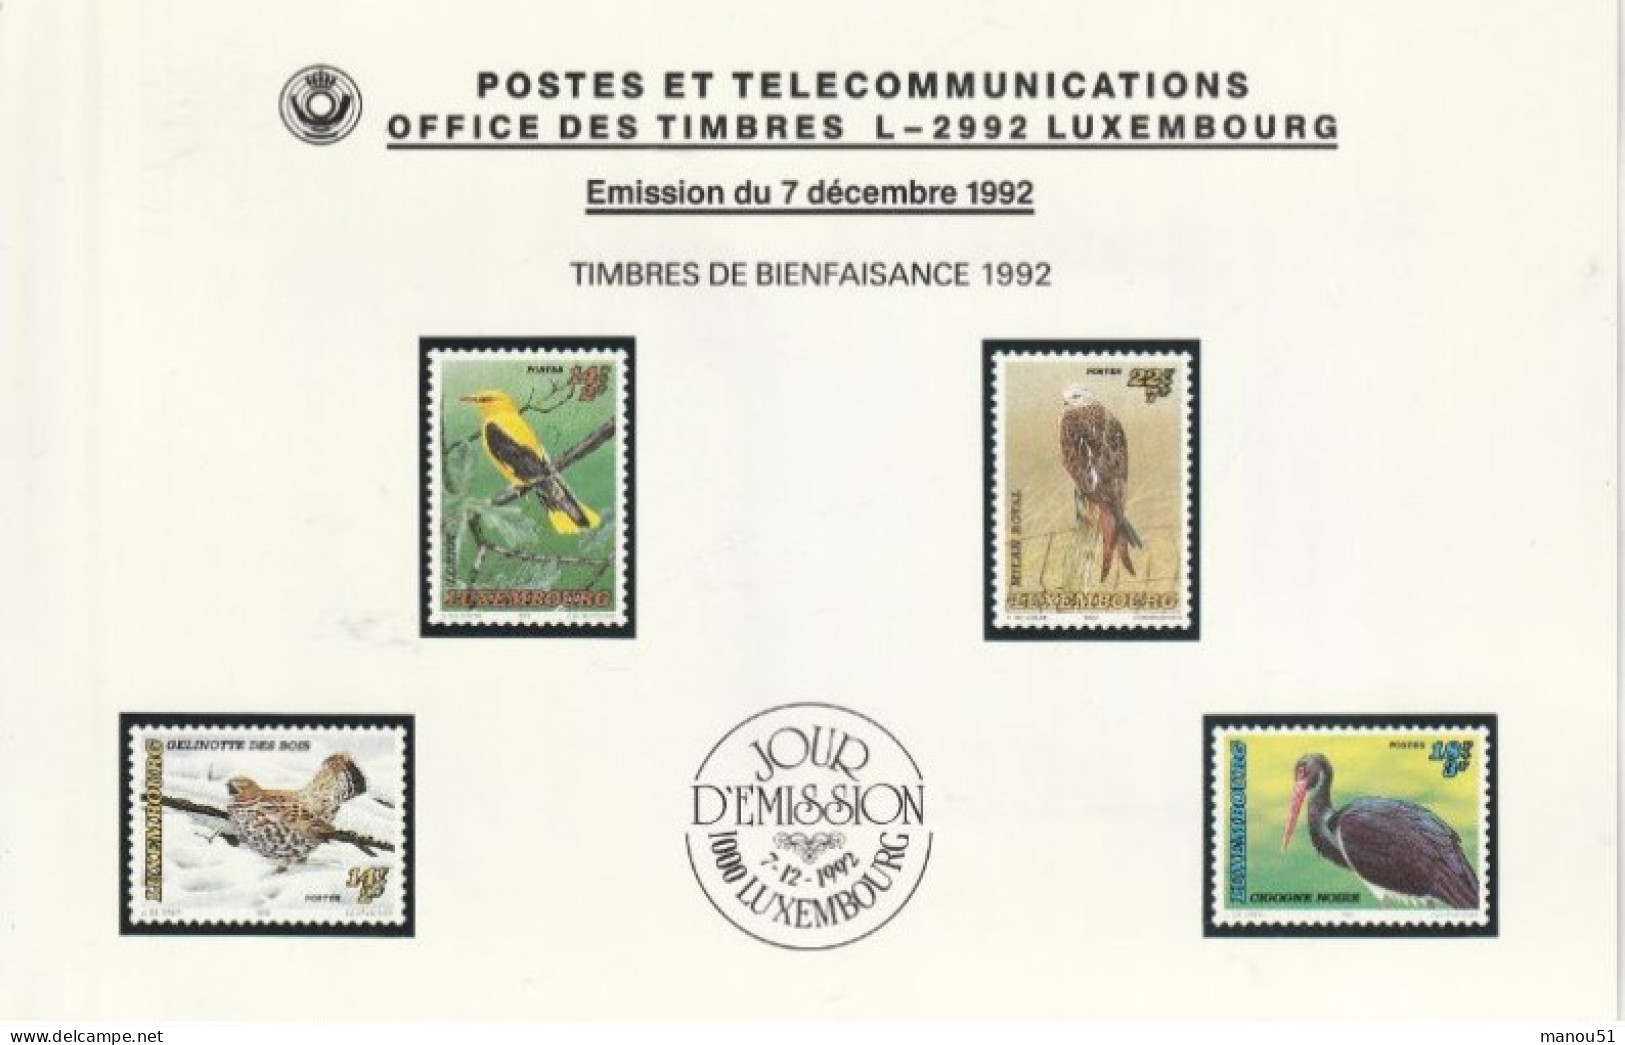 LUXEMBOURG - Timbres De Bienfaisance - Oiseaux Menacés - Emission Du 7.12.1992 - Lot 4 Timbres + 1 Enveloppe 1er Jour - Nuovi